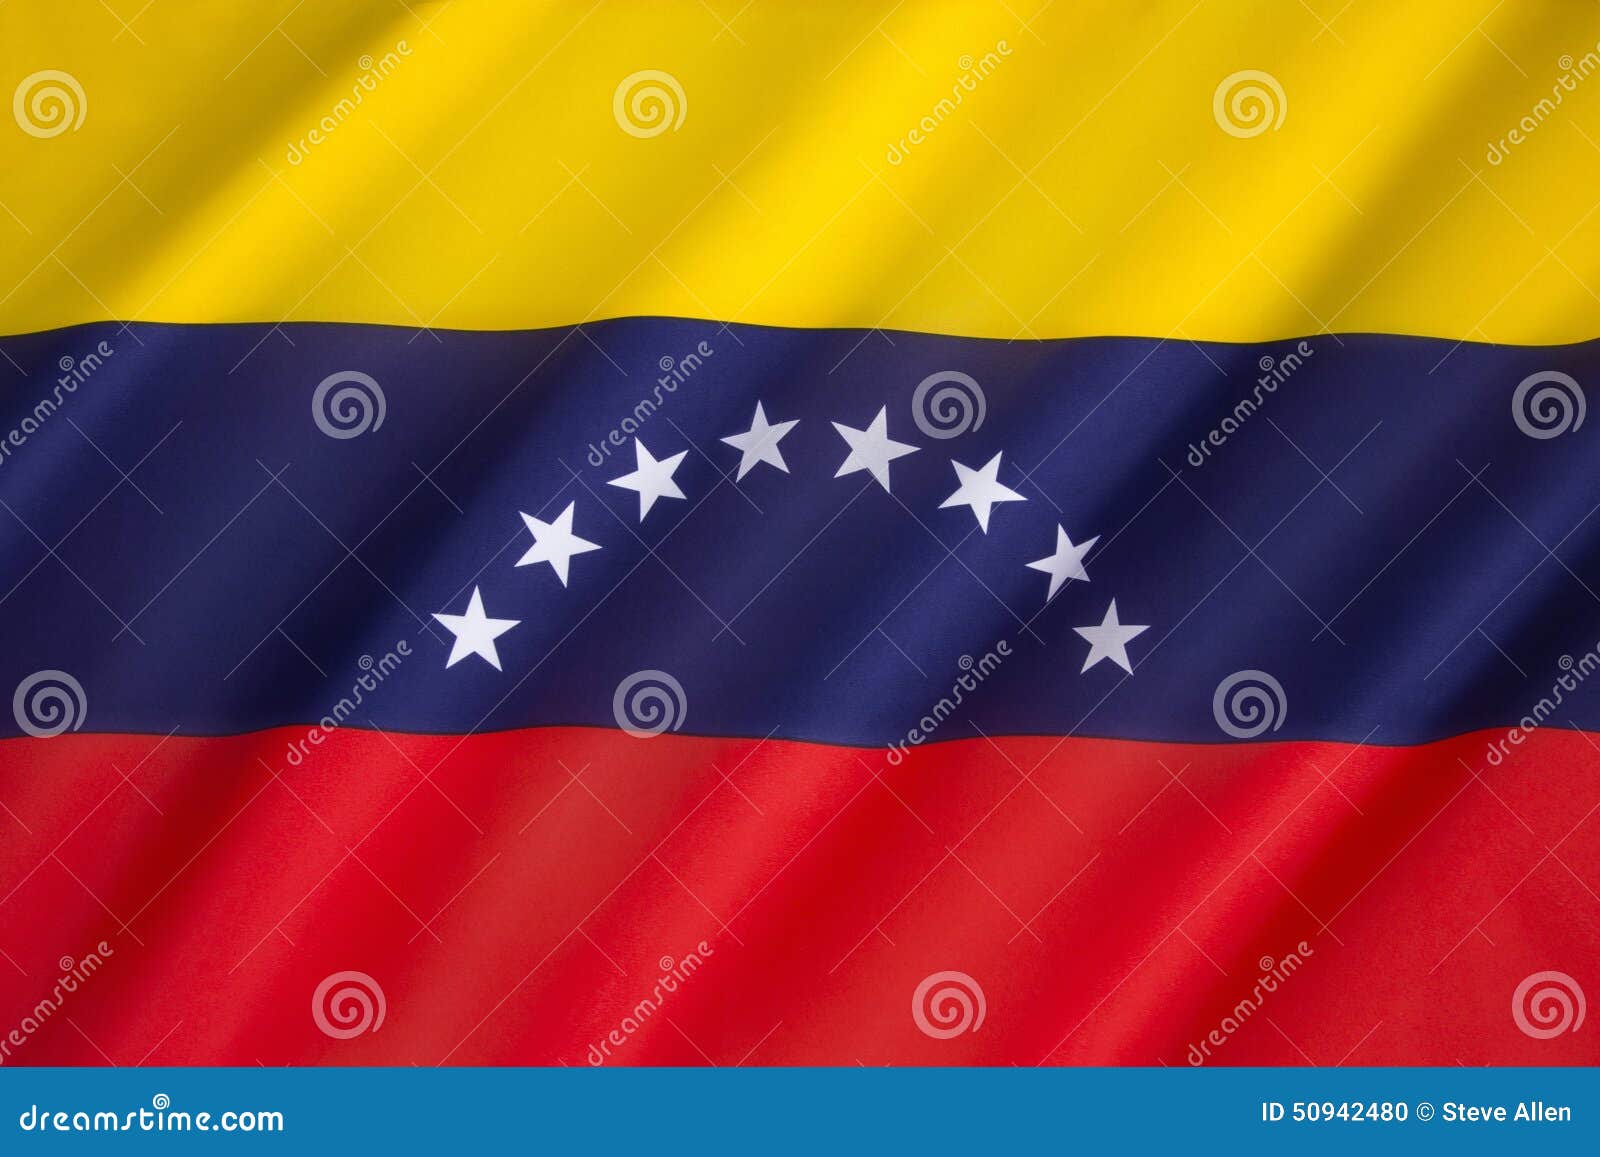 委内瑞拉 — 国旗和边境形状 库存例证. 插画 包括有 标志, 国际, 政府, 符号, 图标, 国界的 - 183011143